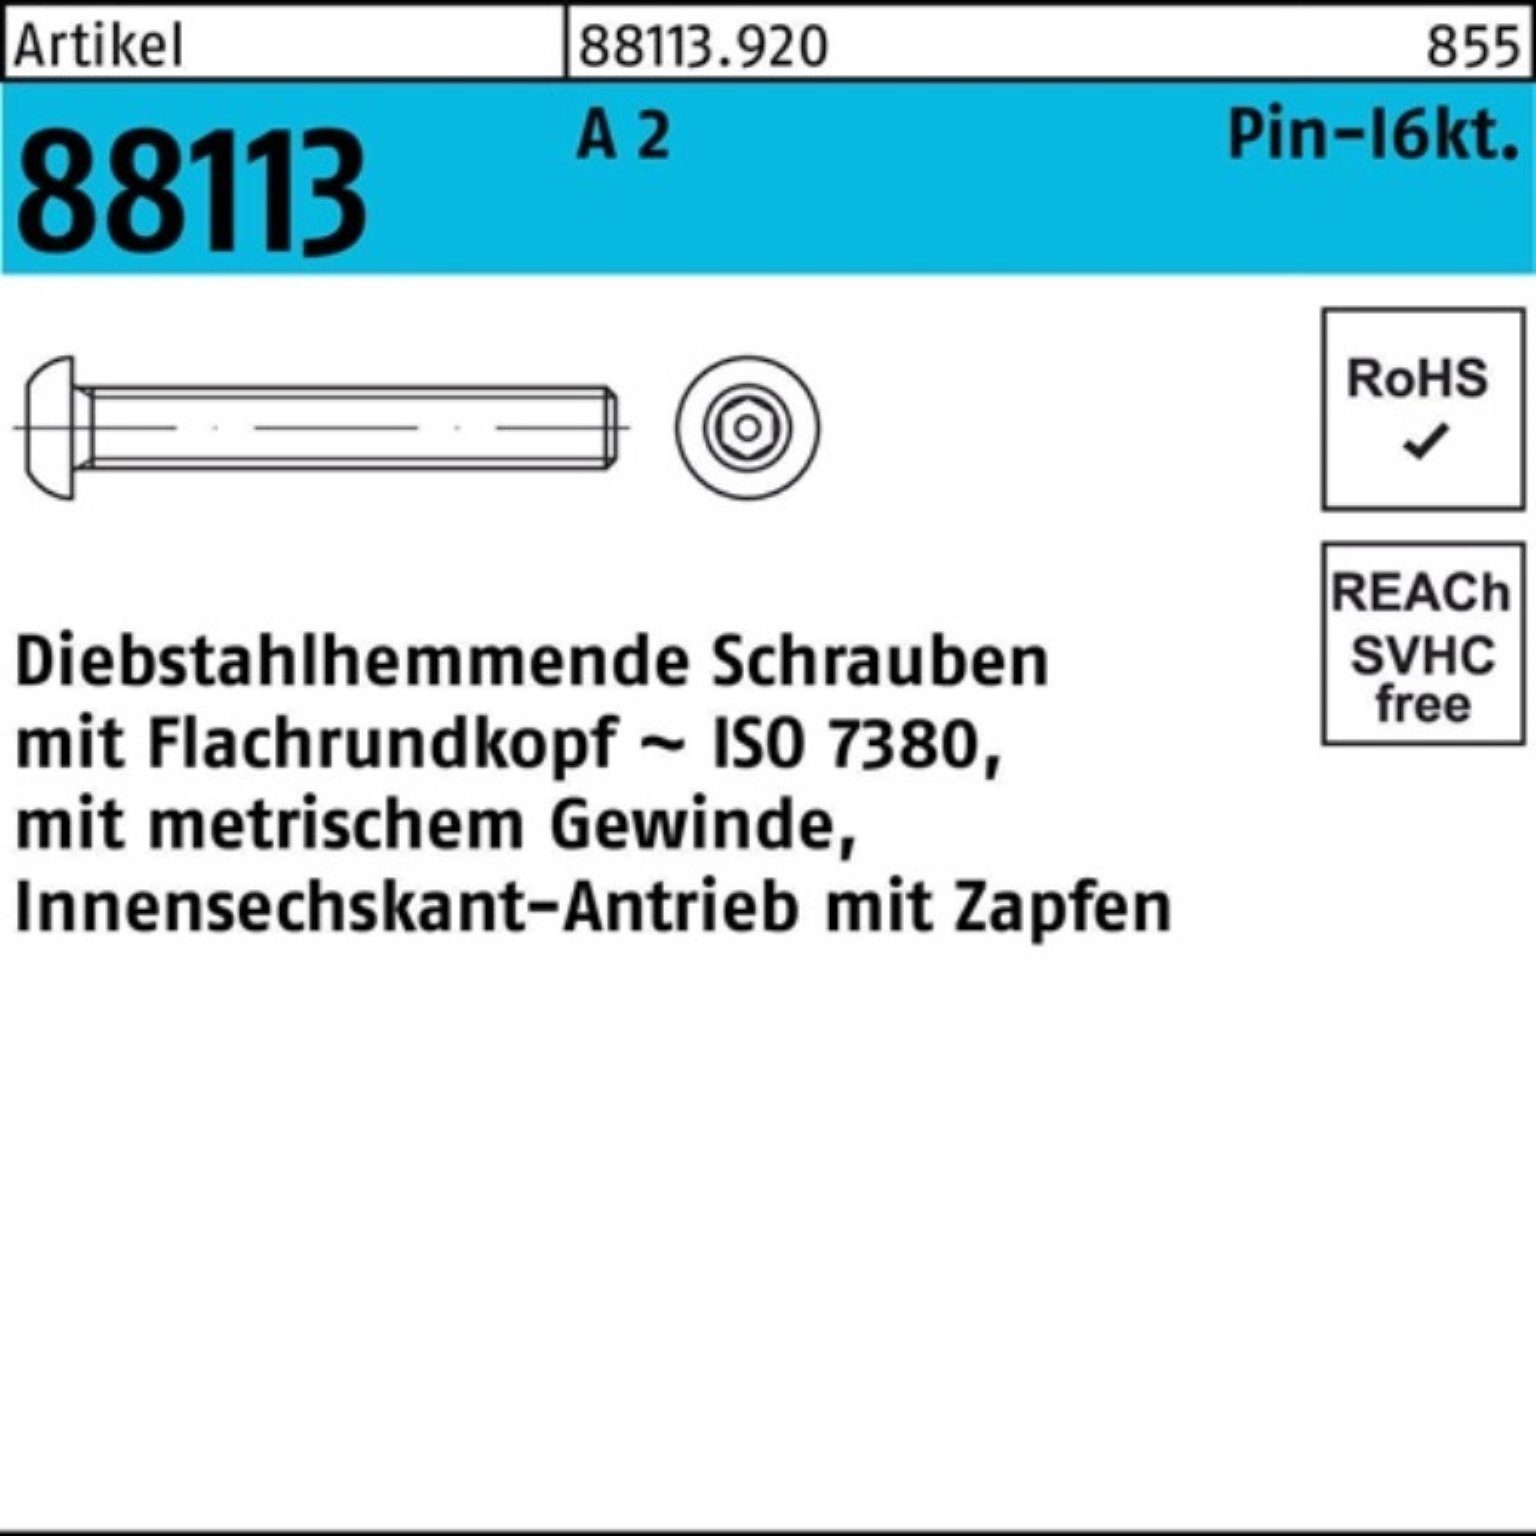 Reyher Schraube 100er Pack Schraube M5x 88113 Innen-6kt R Zapfen diebstahlh. A 10 2 40